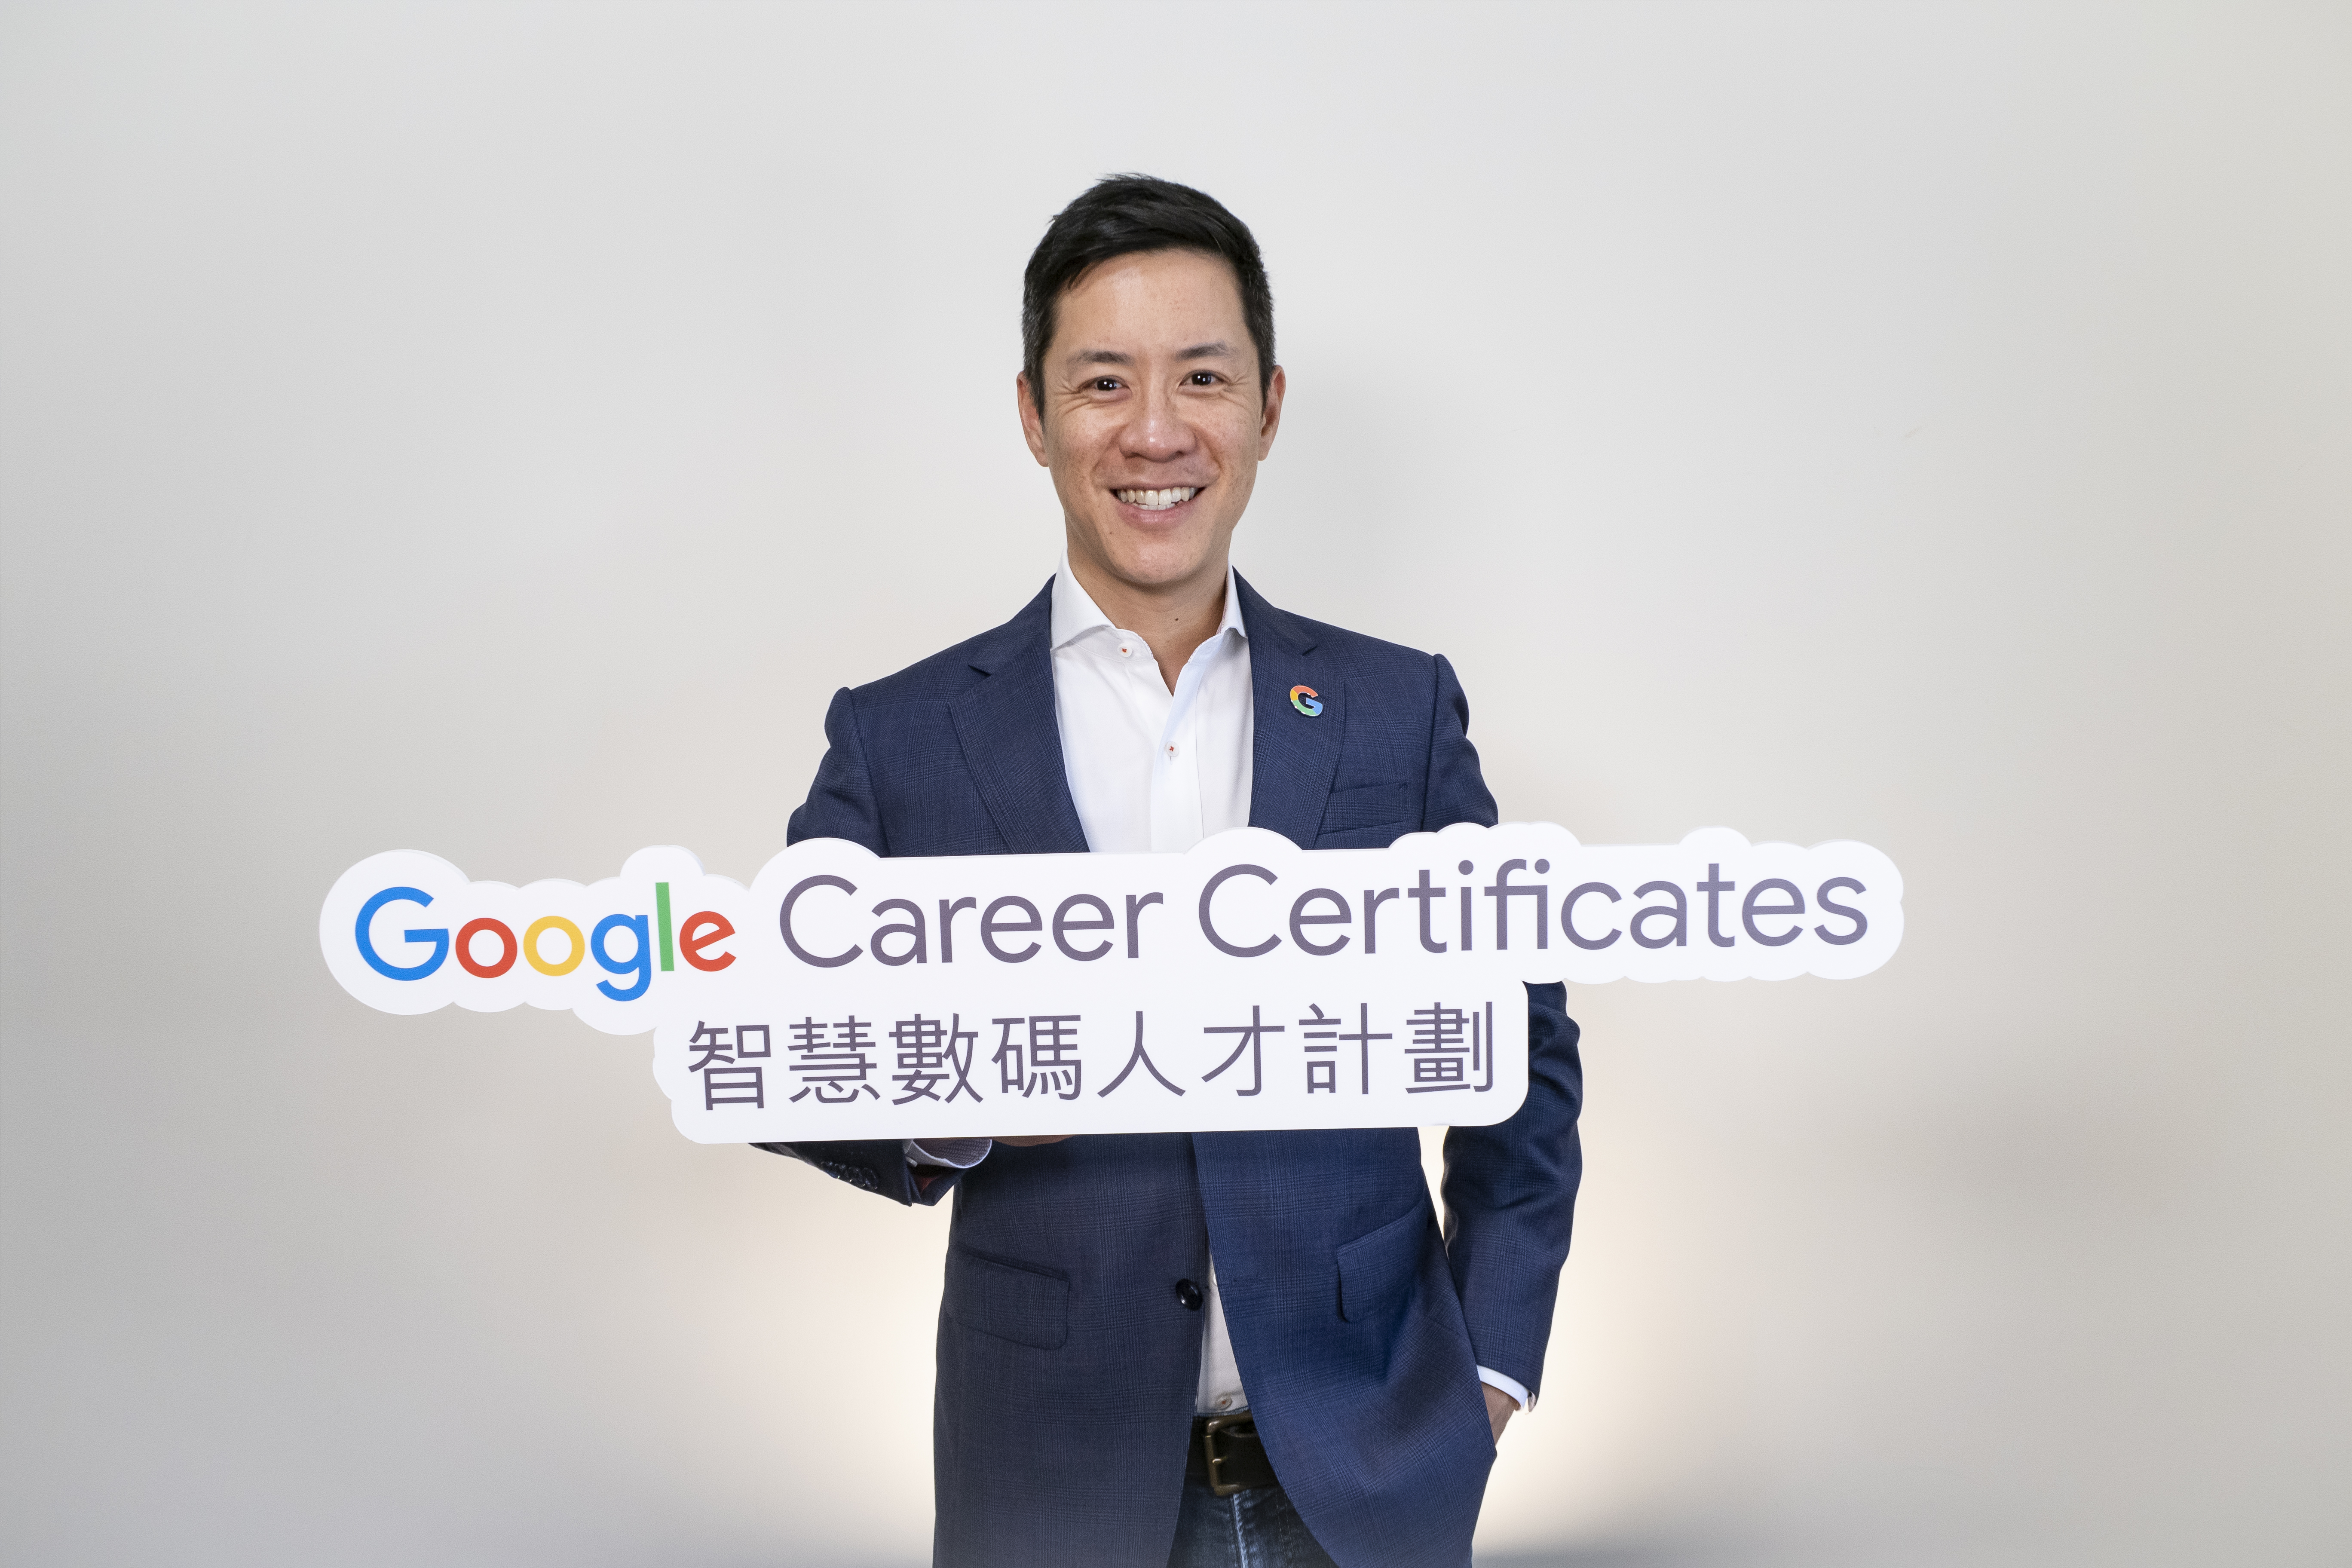 Michael Yue, General Manager, Sales & Operations, Google Hong Kong, said: 